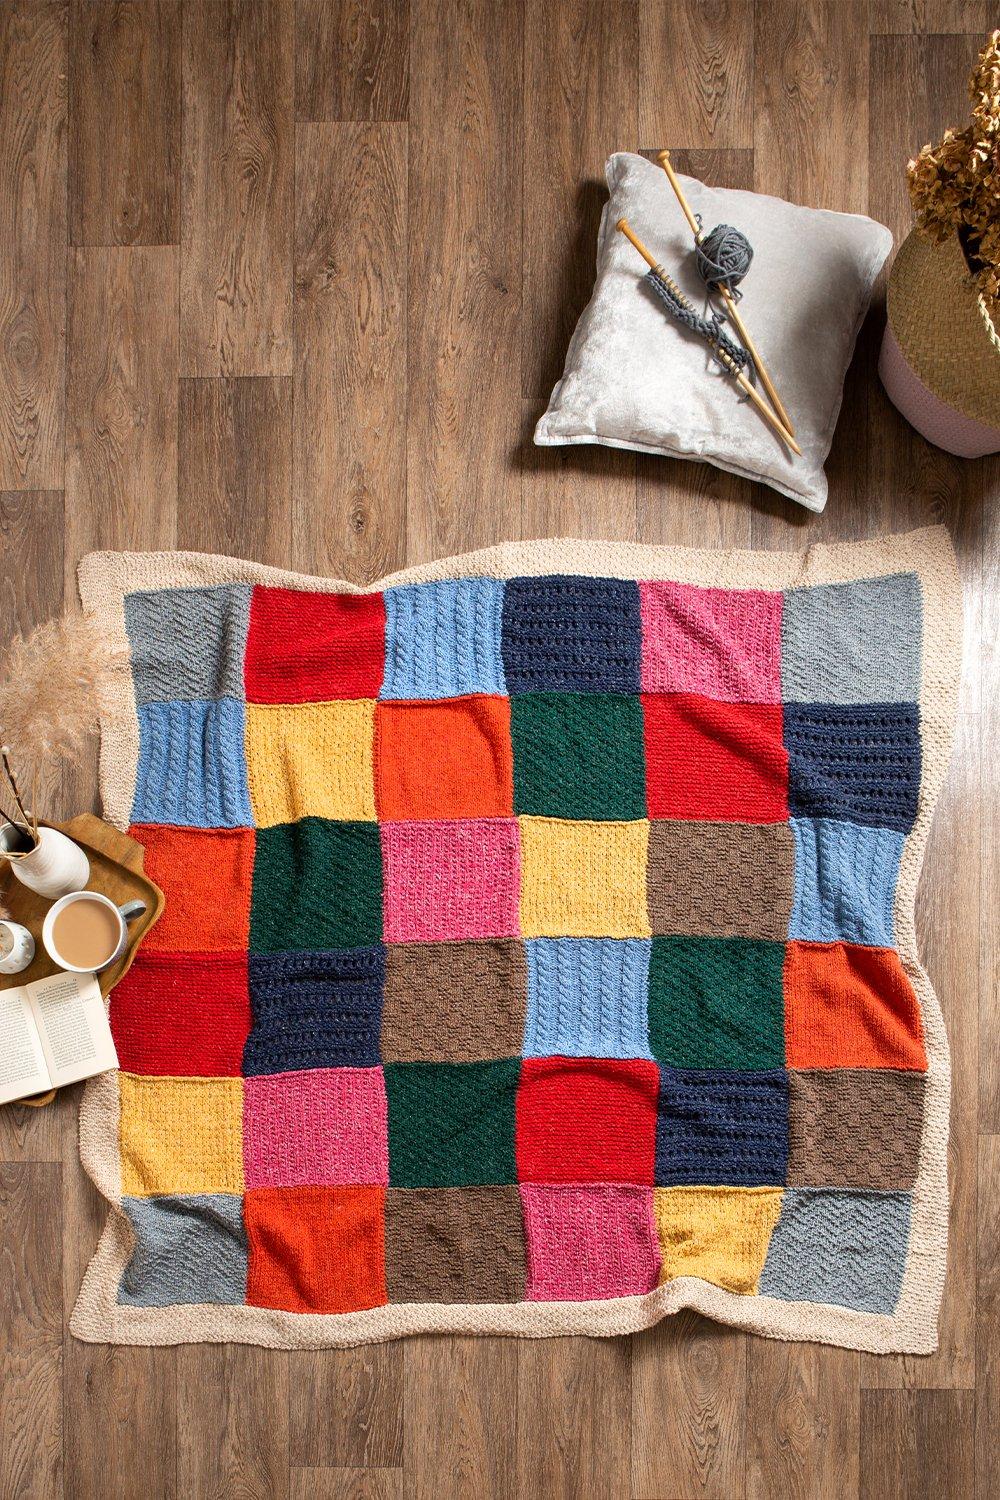 Heritage Blanket Knitting Kit